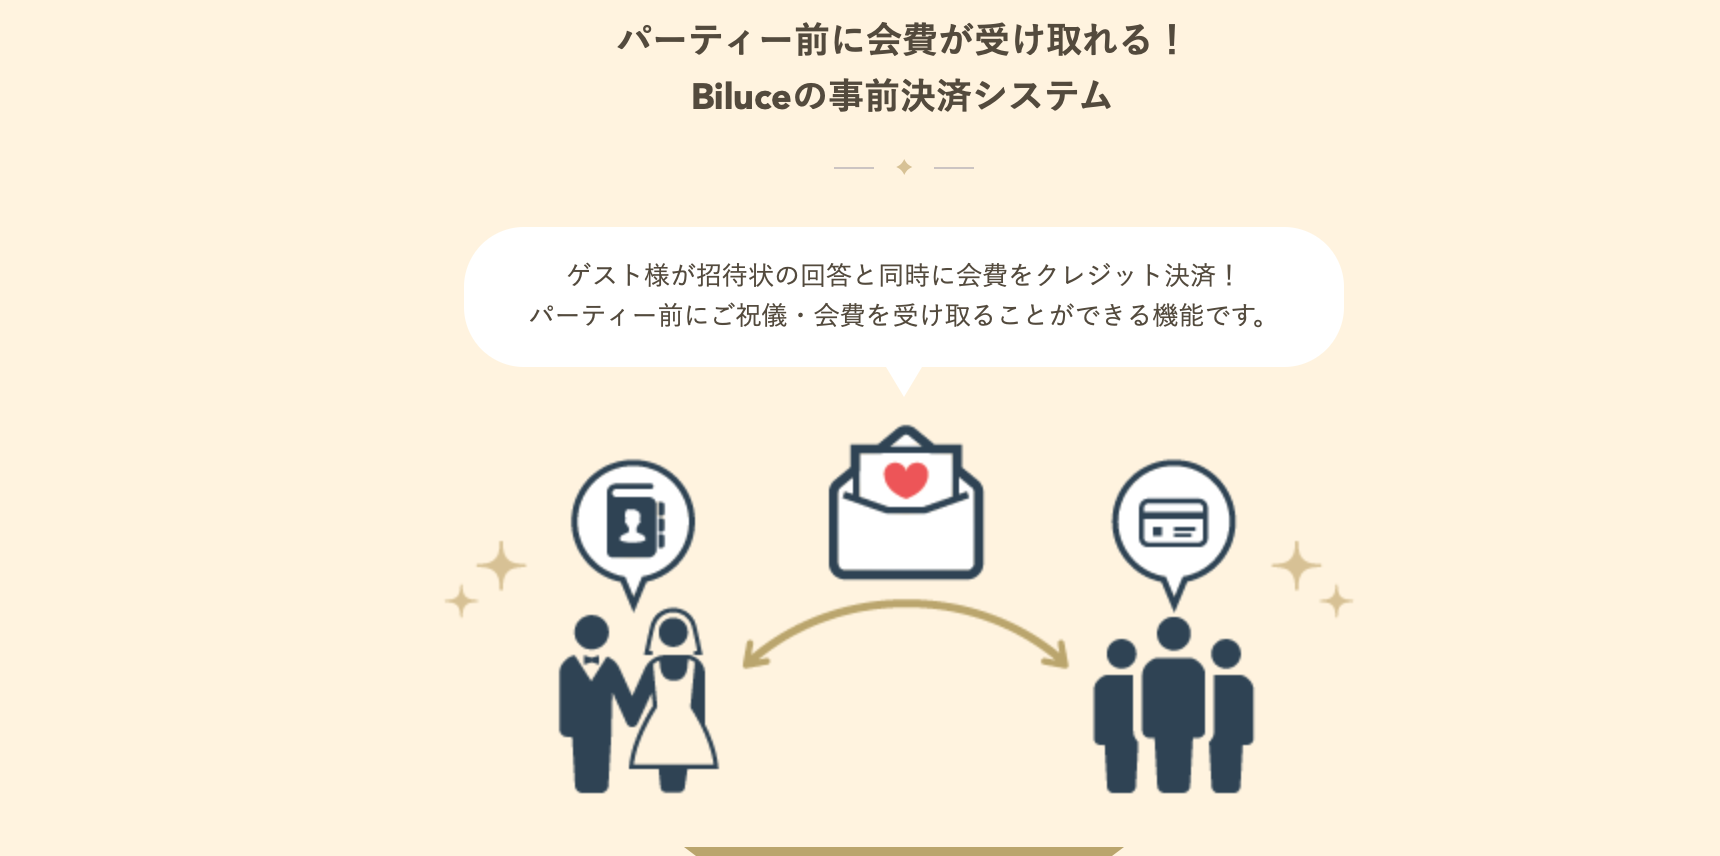 結婚式のゲストにweb招待状の事前決済システムが選ばれている理由 Biluce Blog